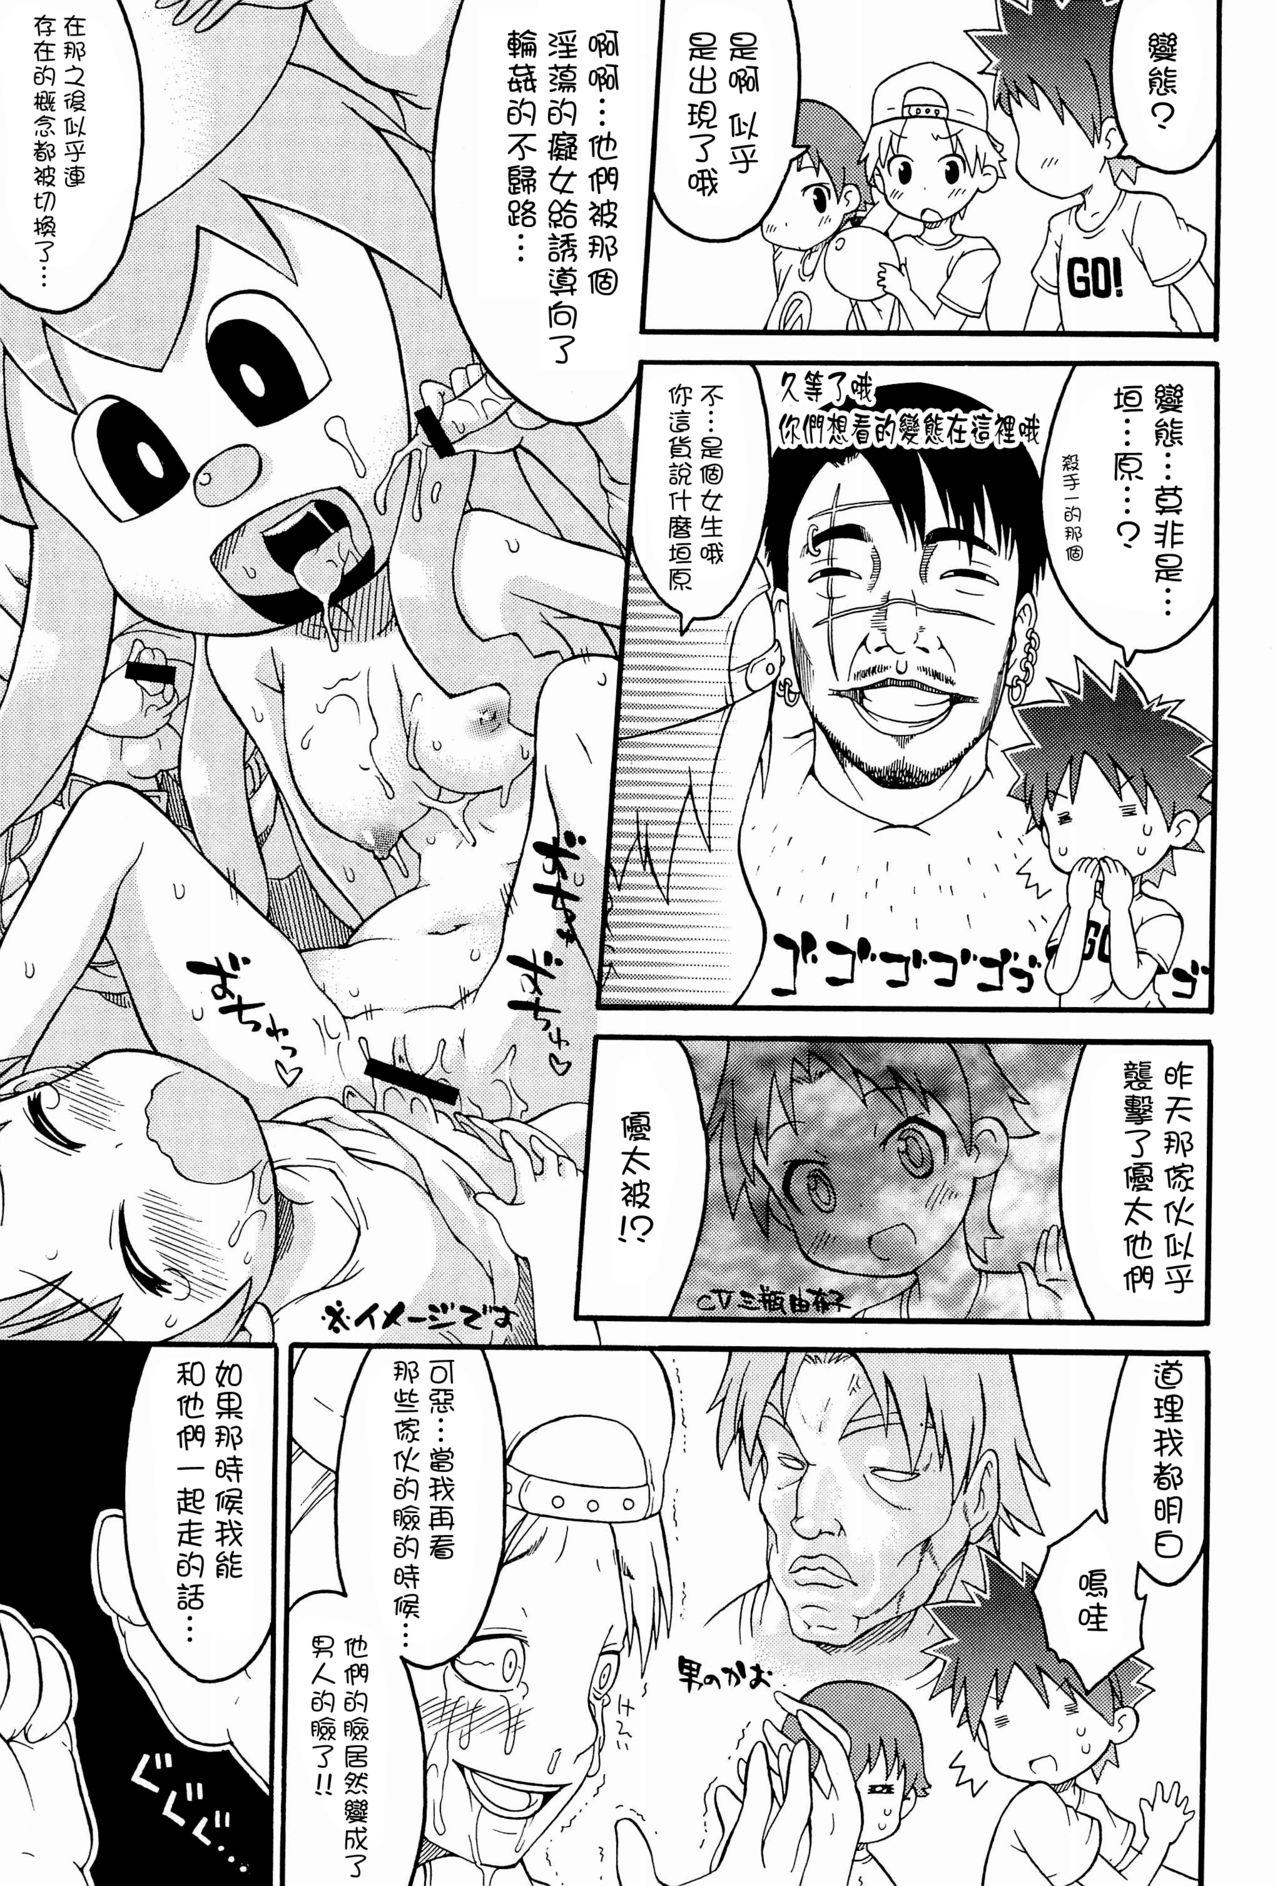 Pervs Shokushu Karamaru Ika no Wakusei - Shinryaku ika musume | invasion squid girl Compilation - Page 5